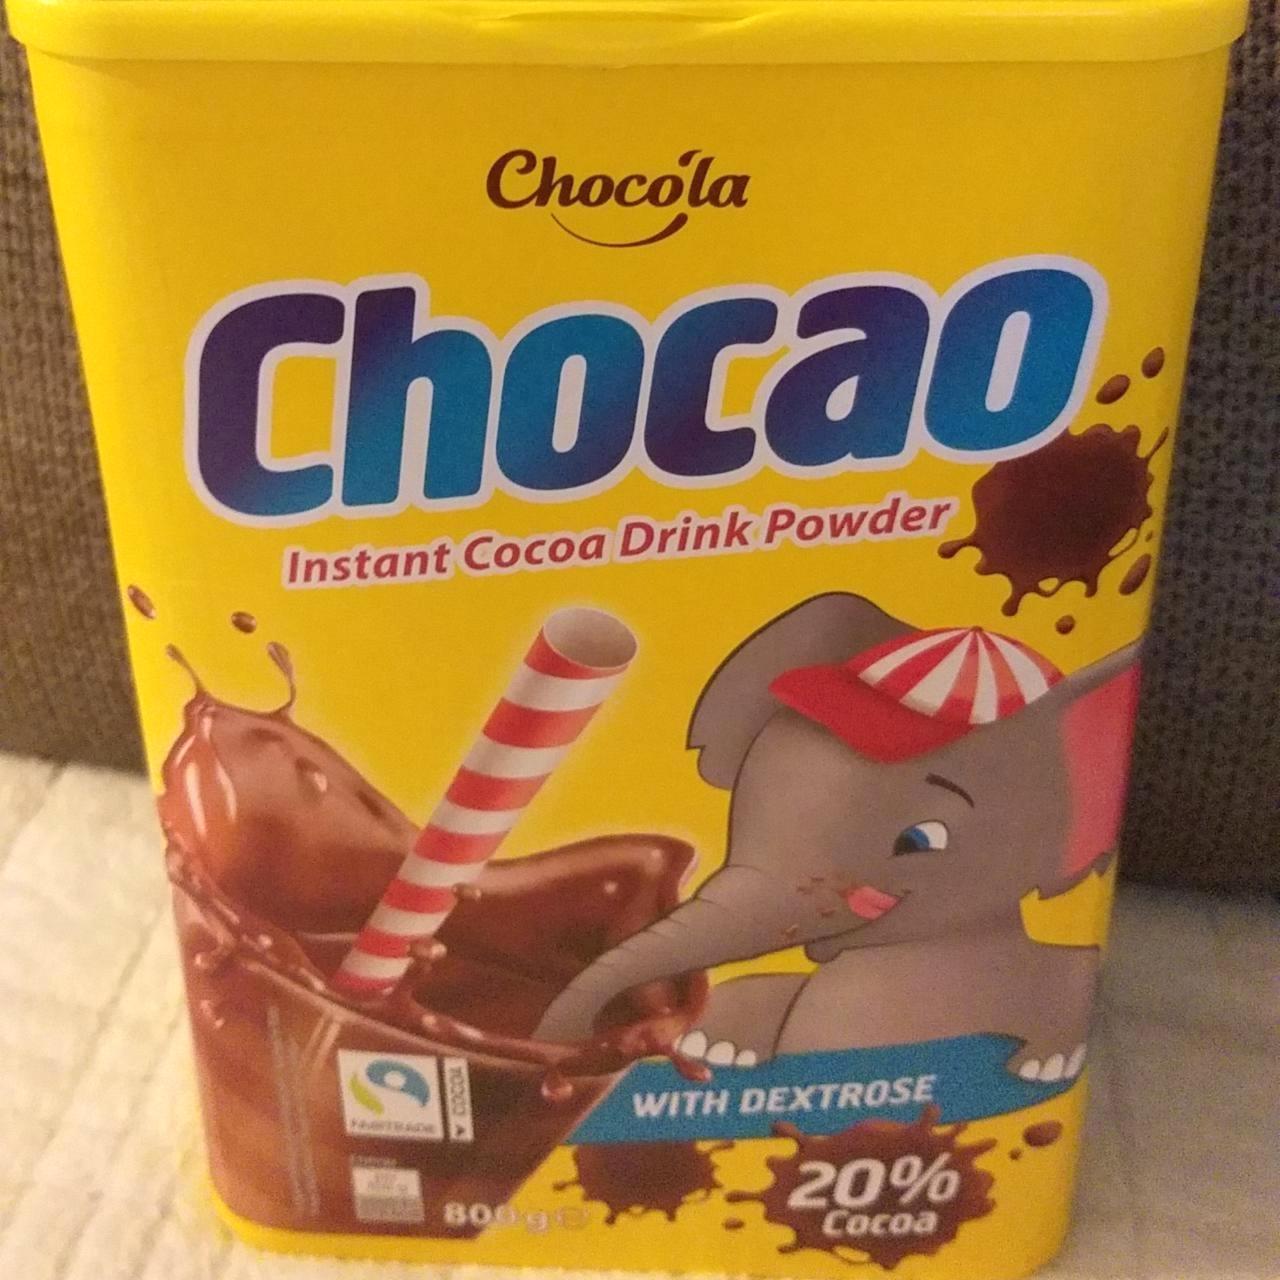 Képek - Kakaópor Chocao instant cocoa drink powder Chocóla